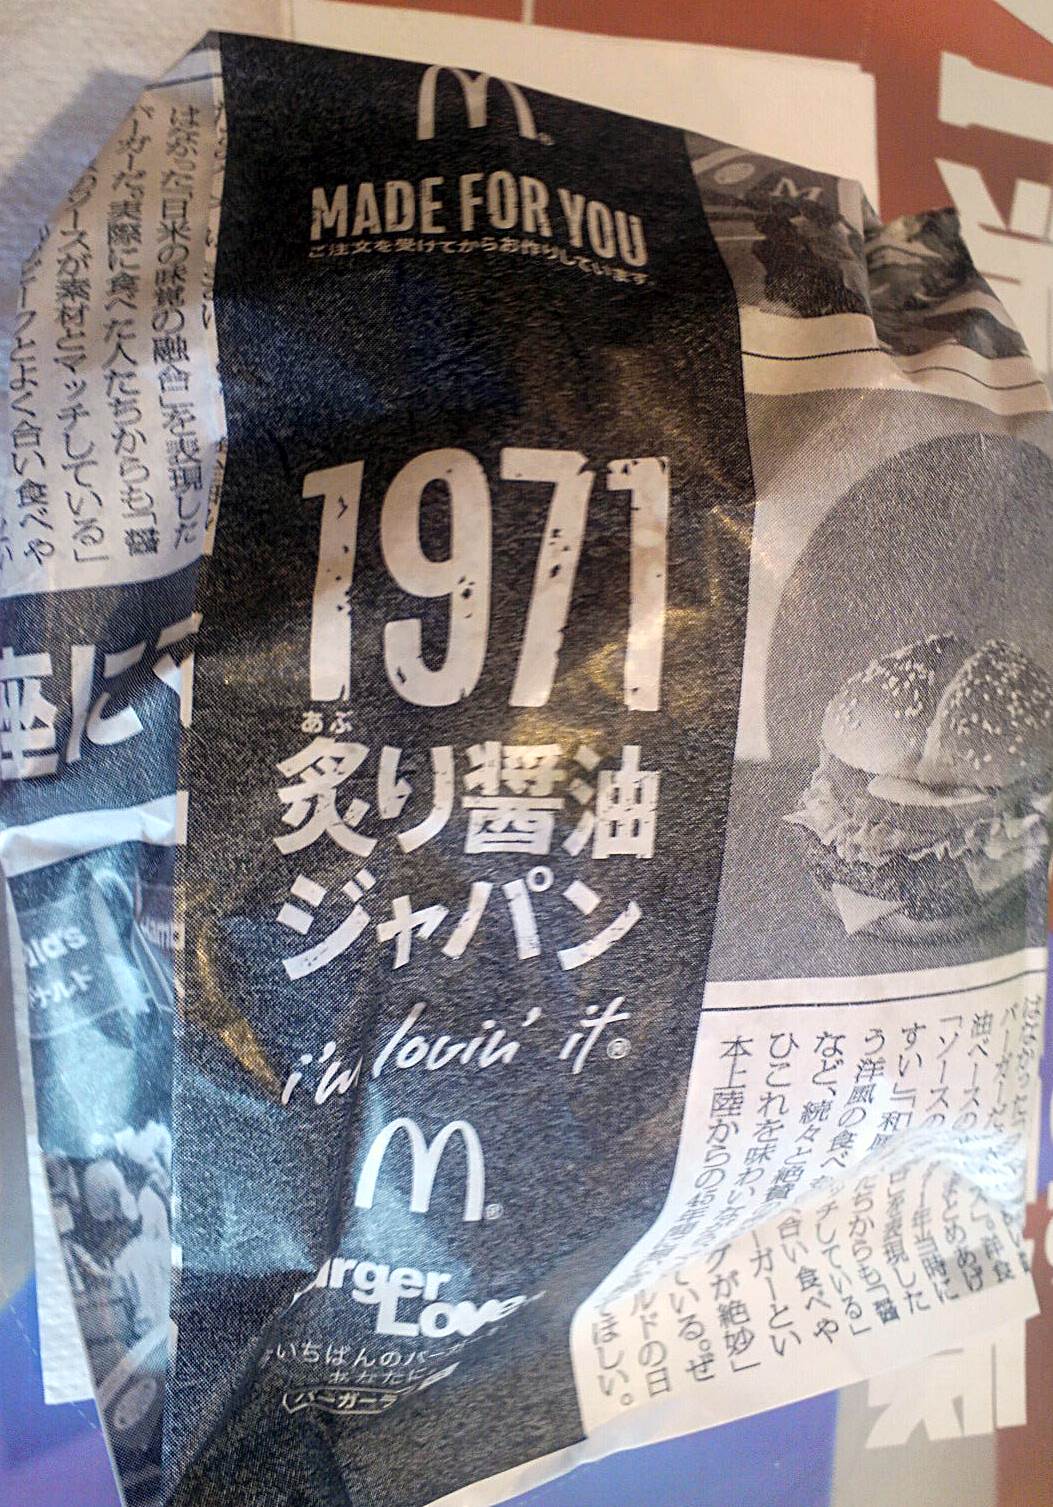 マクドナルド「1971 炙り醤油ジャパン」パッケージ